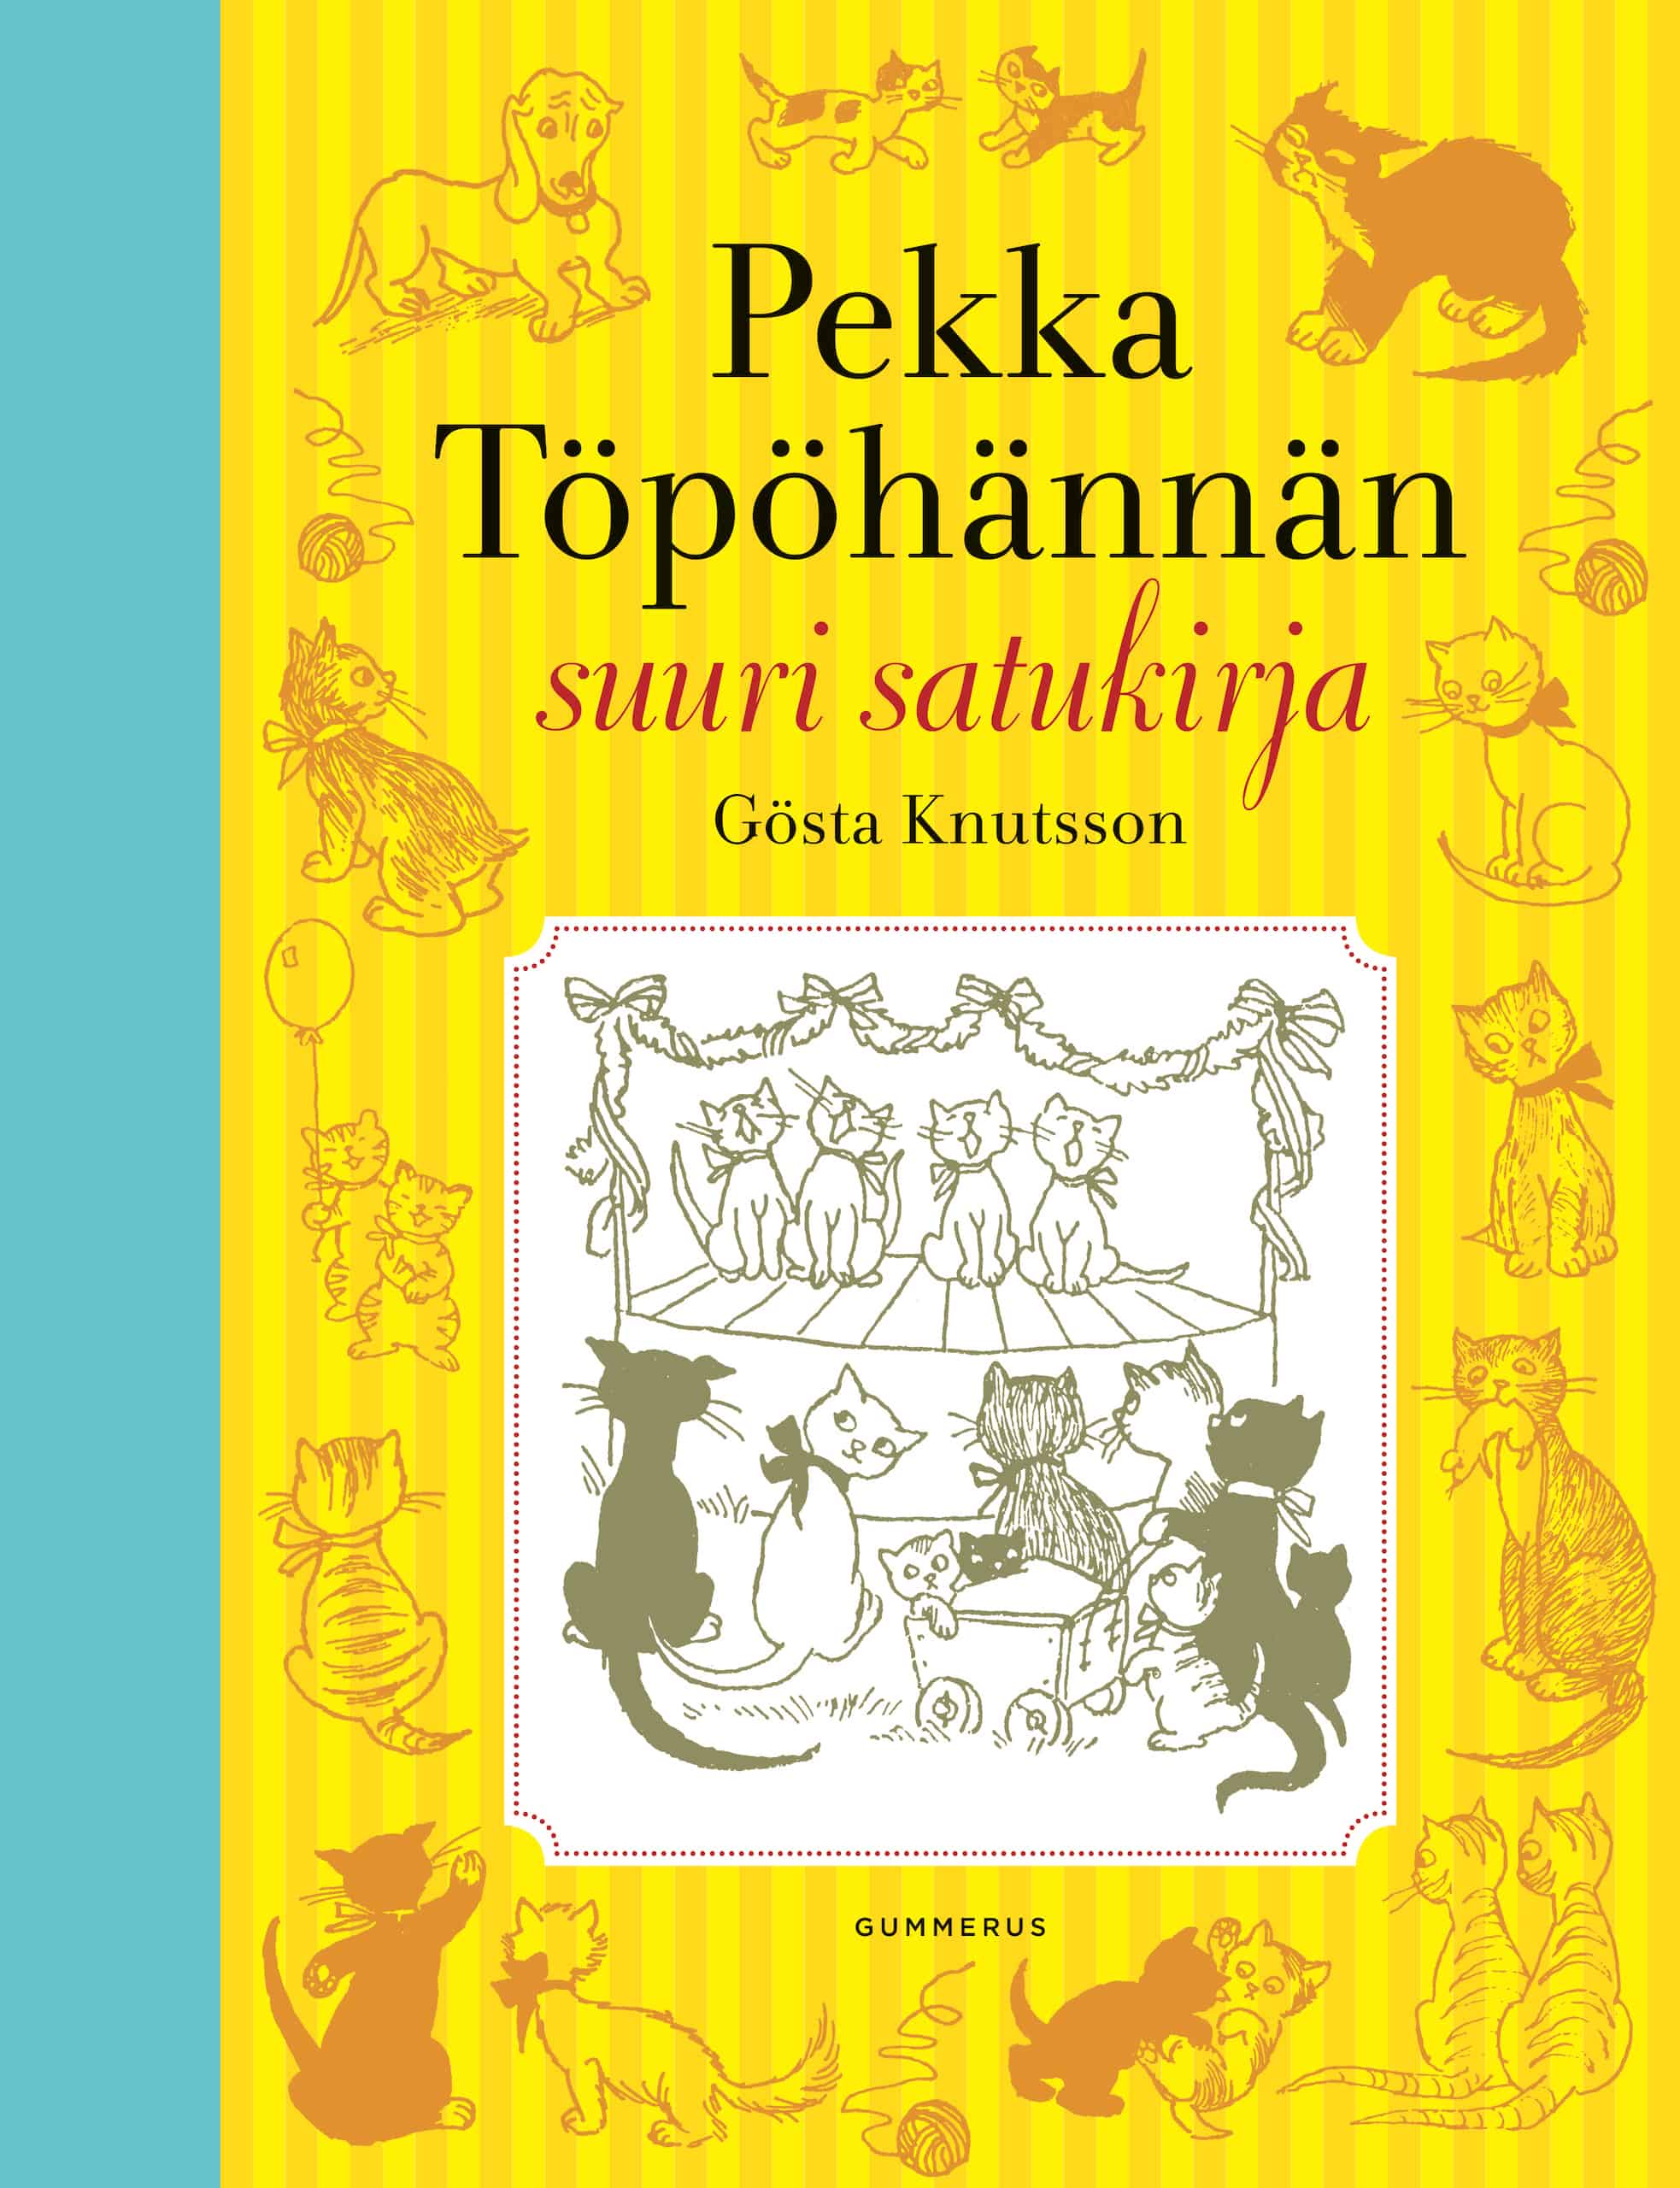 Pekka Töpöhännän suuri satukirja